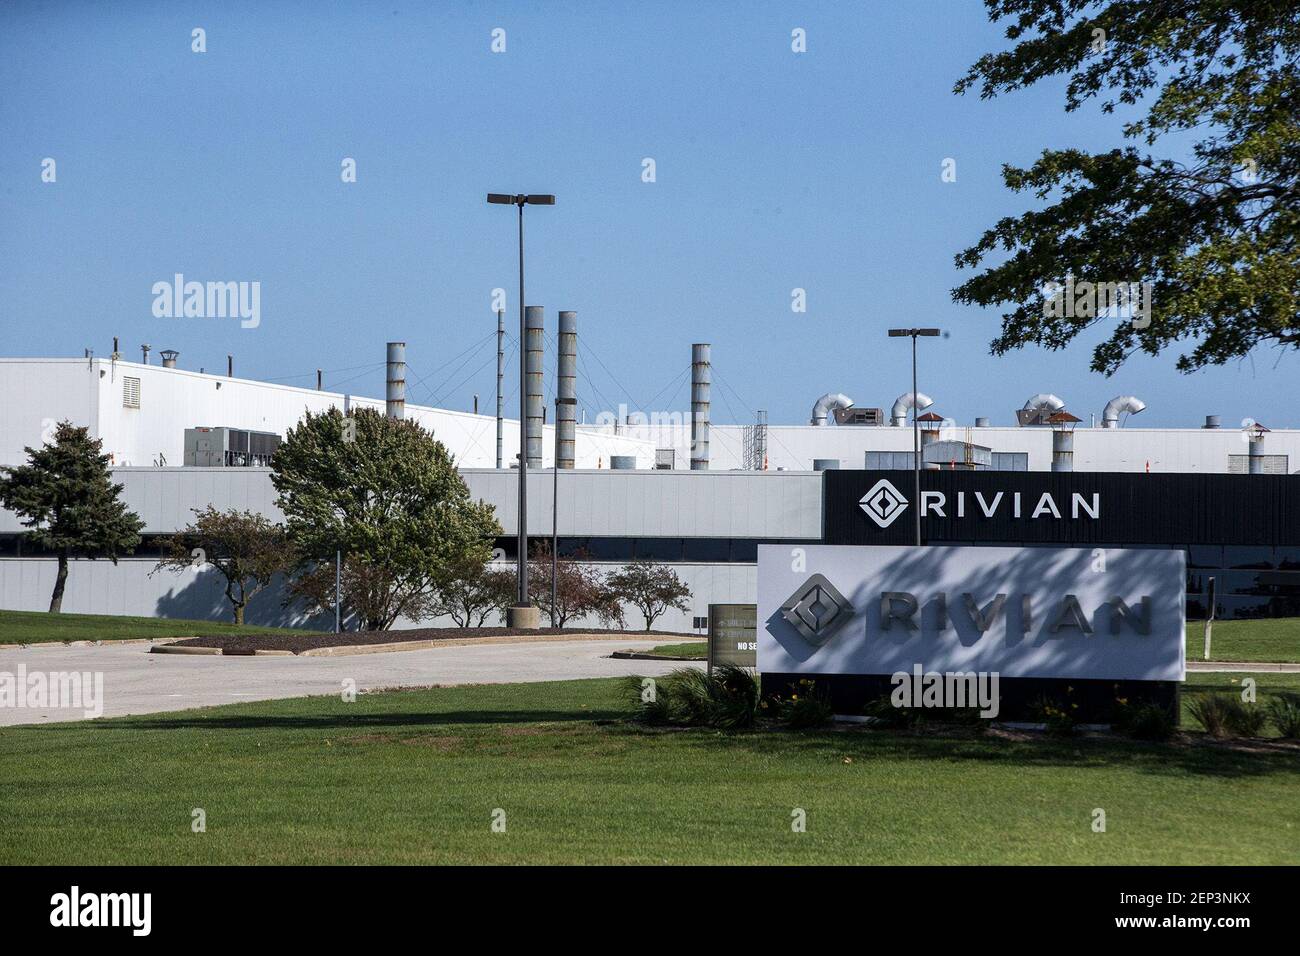 La empresa emergente de camionetas eléctricas Rivian se prepara para producir su línea de vehículos a finales del máximo año en una antigua fábrica de Mitsubishi en normal, Illinois, el 13 de octubre de 2019. (Camille Fine/Chicago Tribune/TNS/Sipa USA) Foto de stock